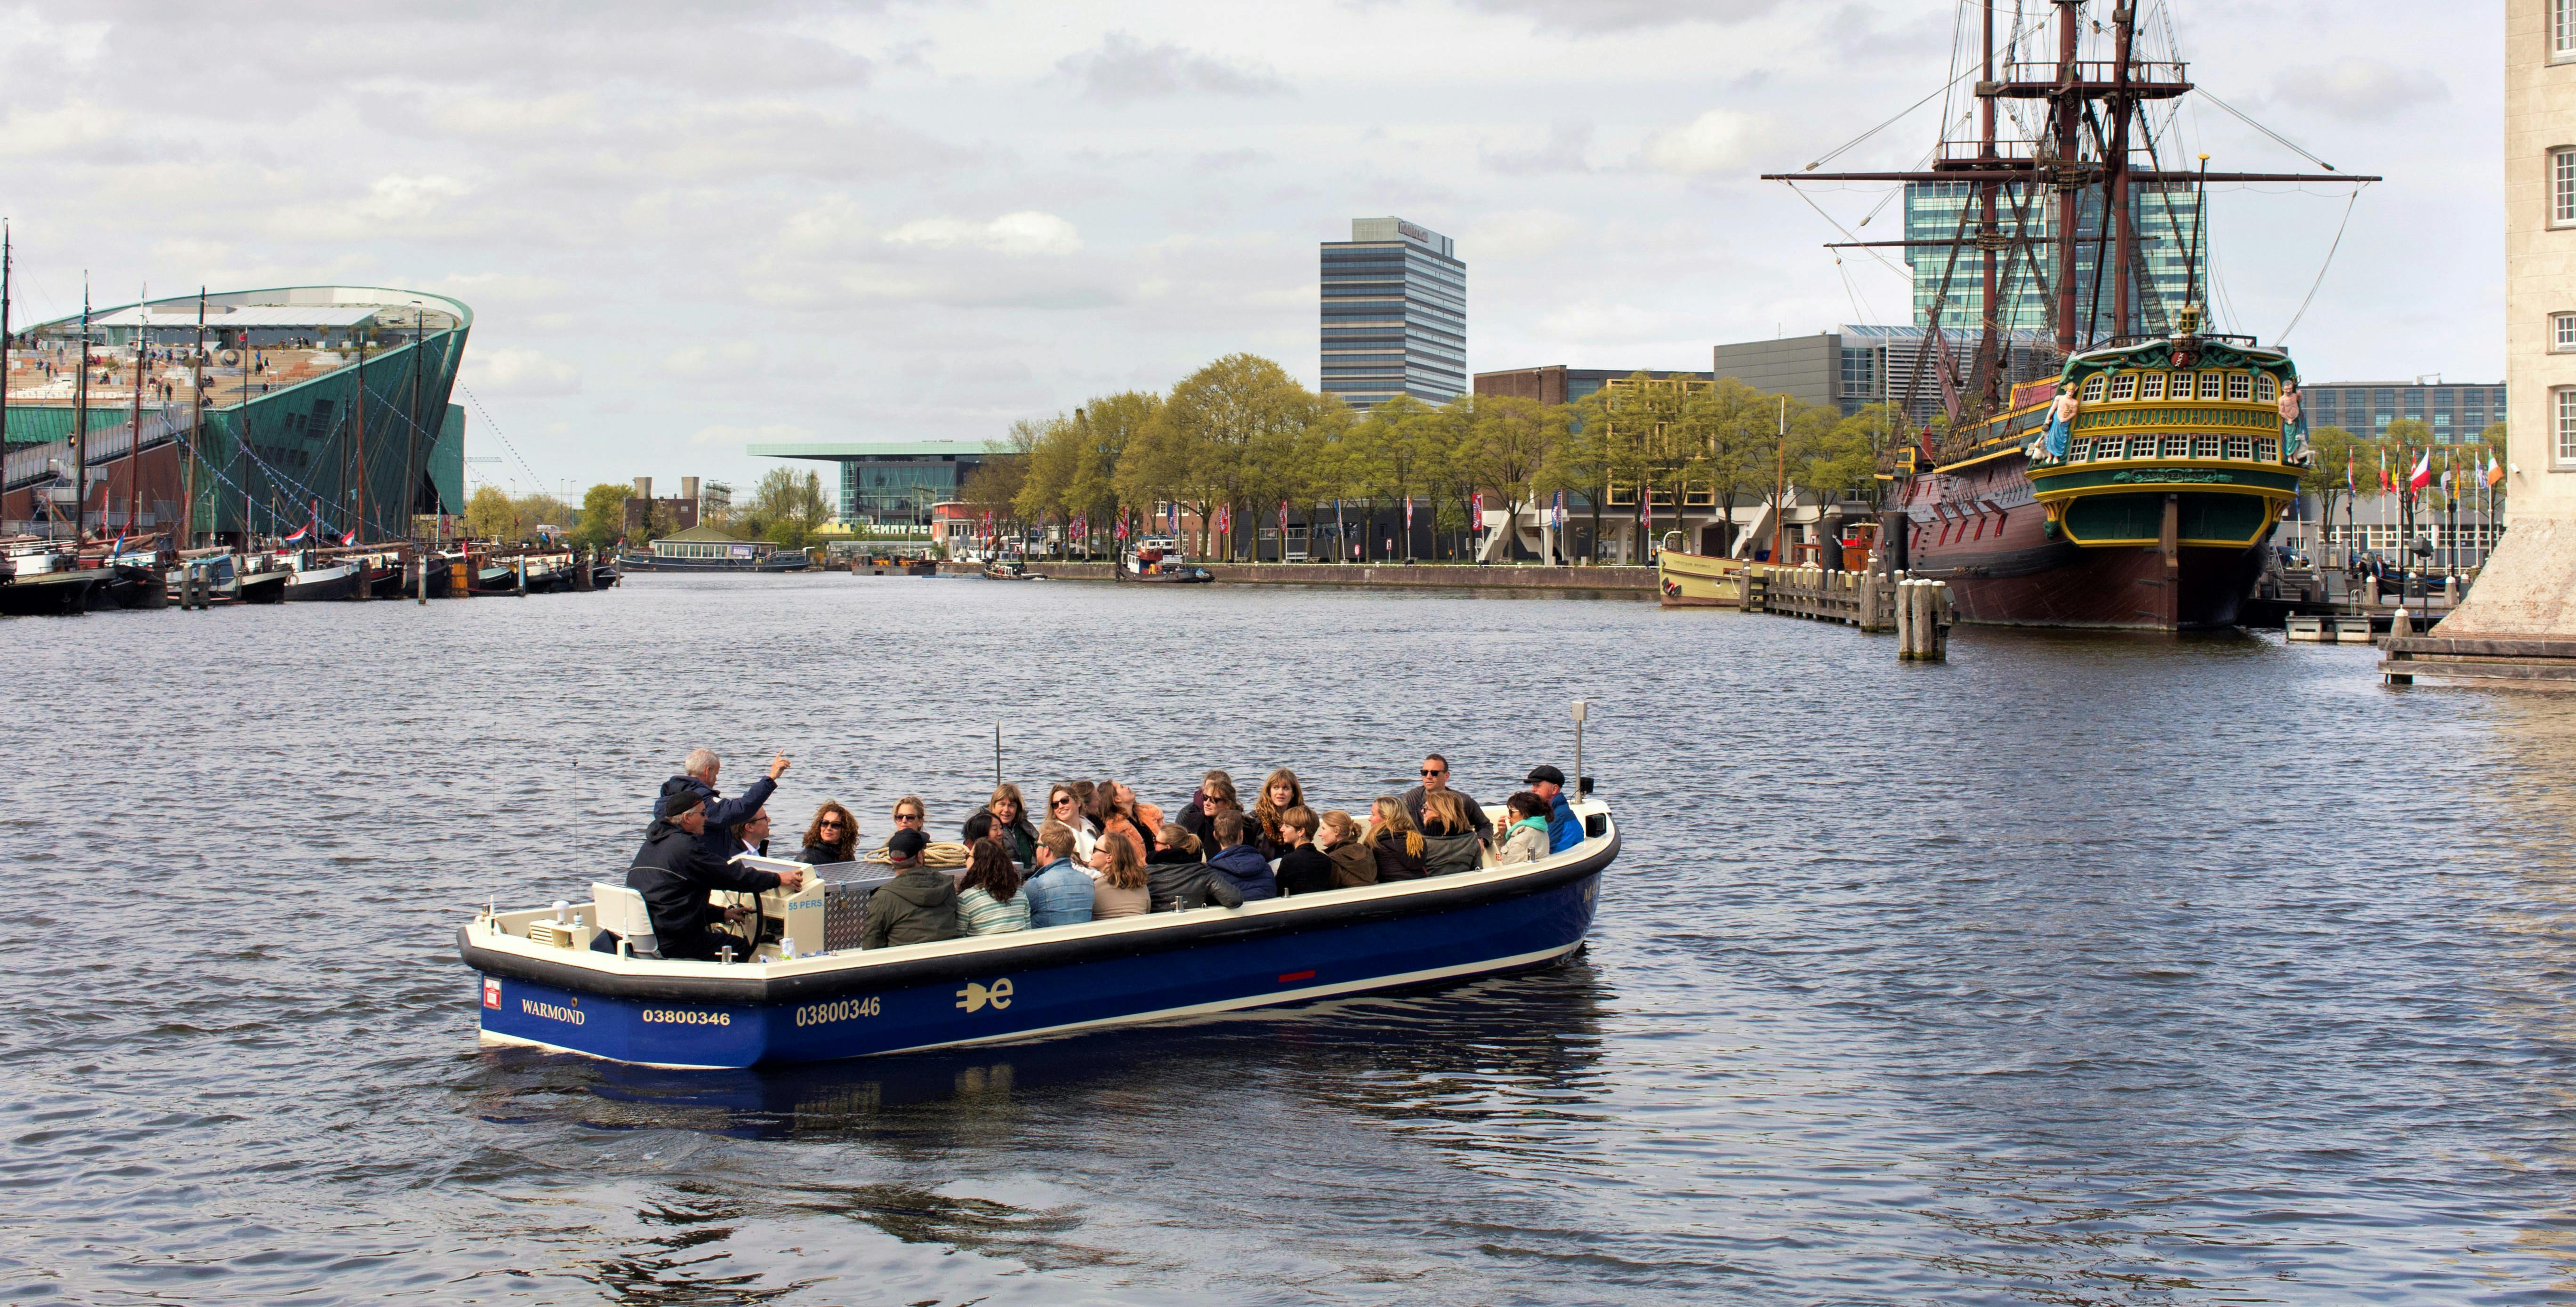 Crucero en un barco abierto por los canales de Ámsterdam